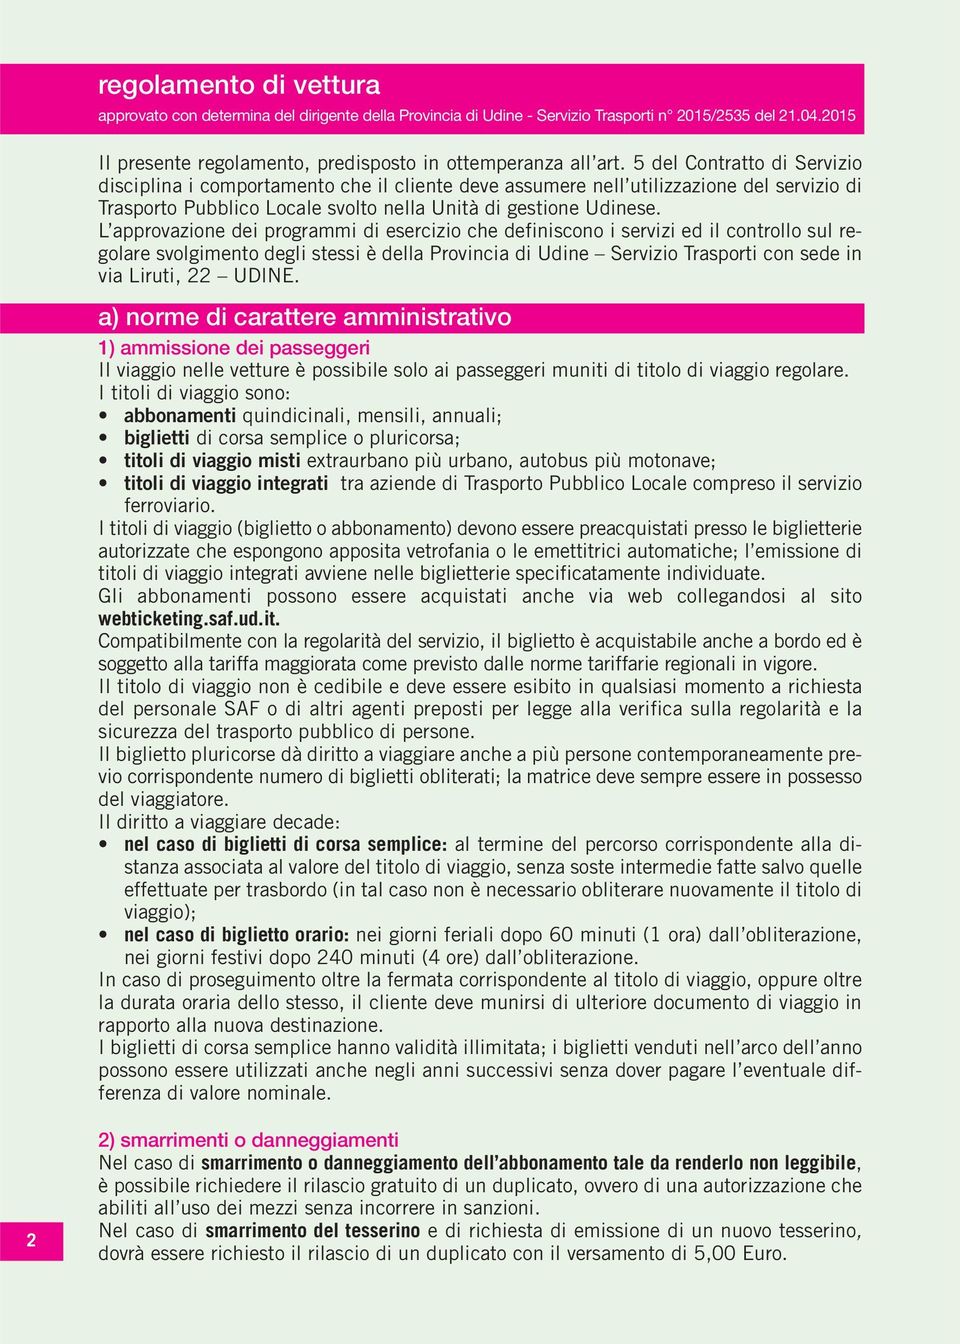 L approvazione dei programmi di esercizio che definiscono i servizi ed il controllo sul regolare svolgimento degli stessi è della Provincia di Udine Servizio Trasporti con sede in via Liruti, 22